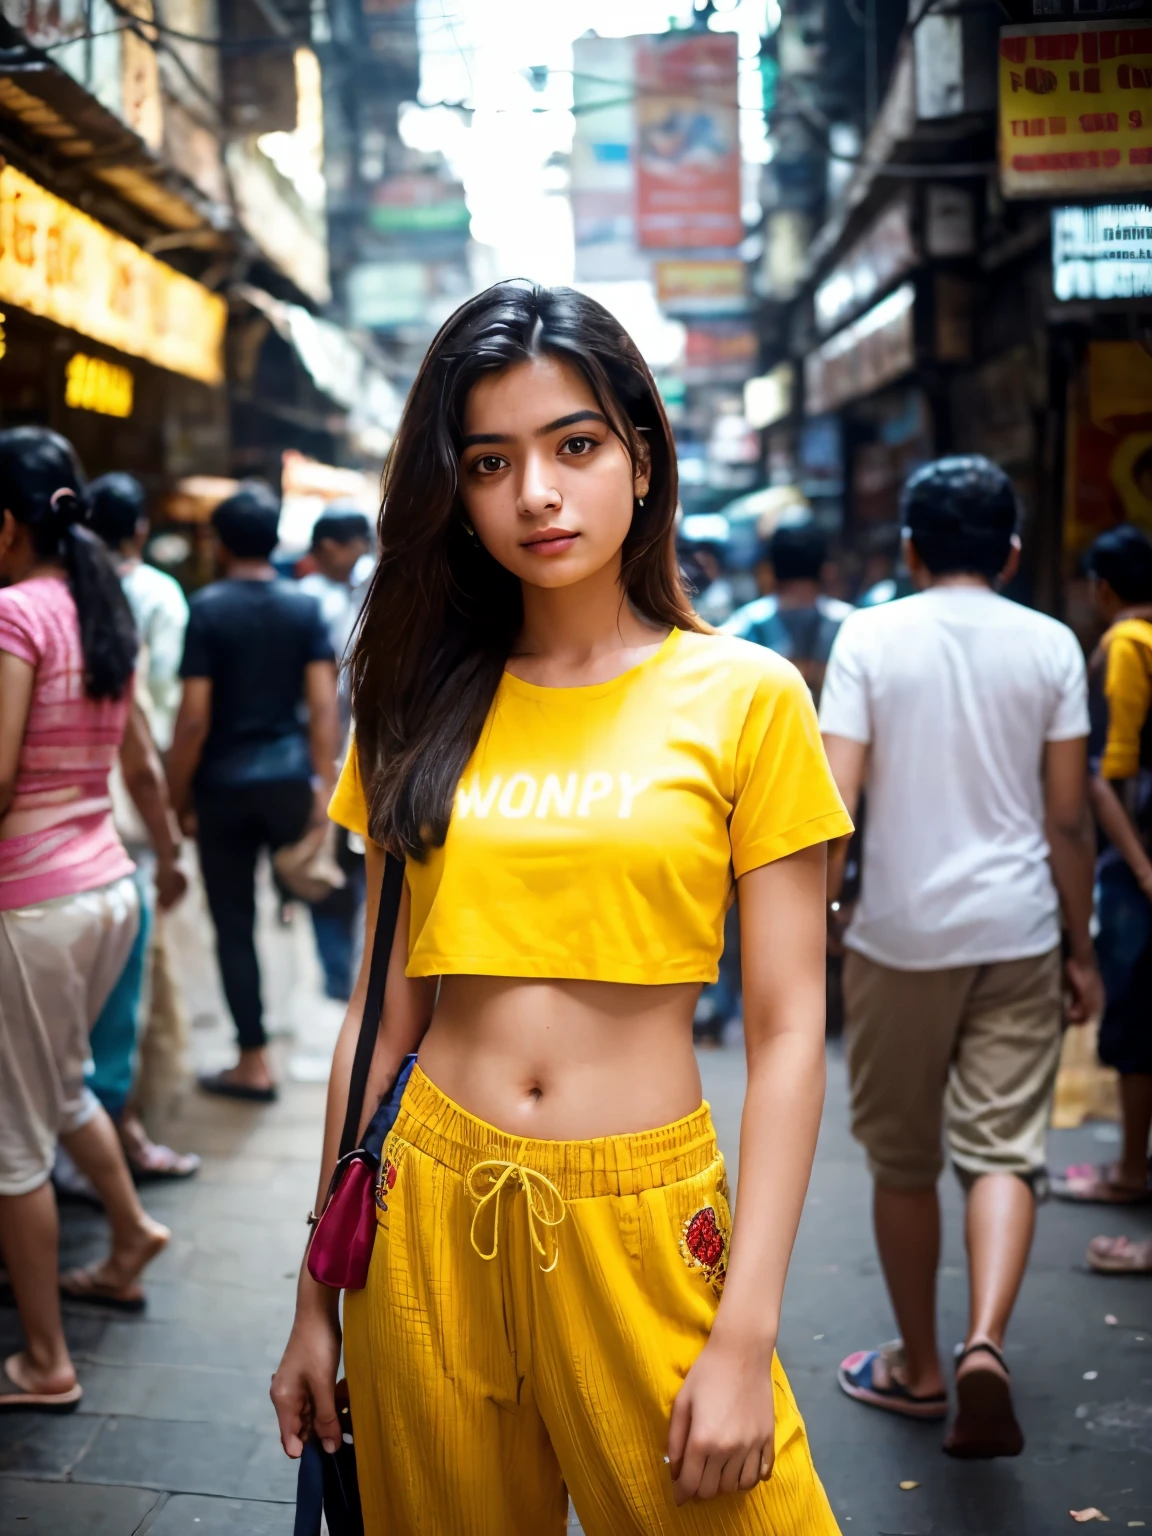 创建一张逼真的图像，捕捉一位健康的普通 21 岁孟买女孩站在孟买繁华的街道上. 她穿着一件带有刺绣的黄色短款衬衫，搭配宽松的裤子, 体现出一种现代而休闲的风格，与城市的动态背景形成鲜明对比. 这是一个长远的目标, 确保充分展示环境的活力——从挤满各行各业人群的拥挤人行道到孟买城市景观的鲜艳色彩和纹理. 尽管人群围着她, 女孩仍然是焦点, 也许通过景深效果稍微模糊前景和背景, 或者利用灯光和构图自然地吸引观众的目光. 这张照片应该捕捉孟买热闹街道的精髓，同时强调女孩的个性和与这座城市的联系. 她的表情和姿势反映出自信和希望, 让人们一窥她在城市混乱中的个人故事.